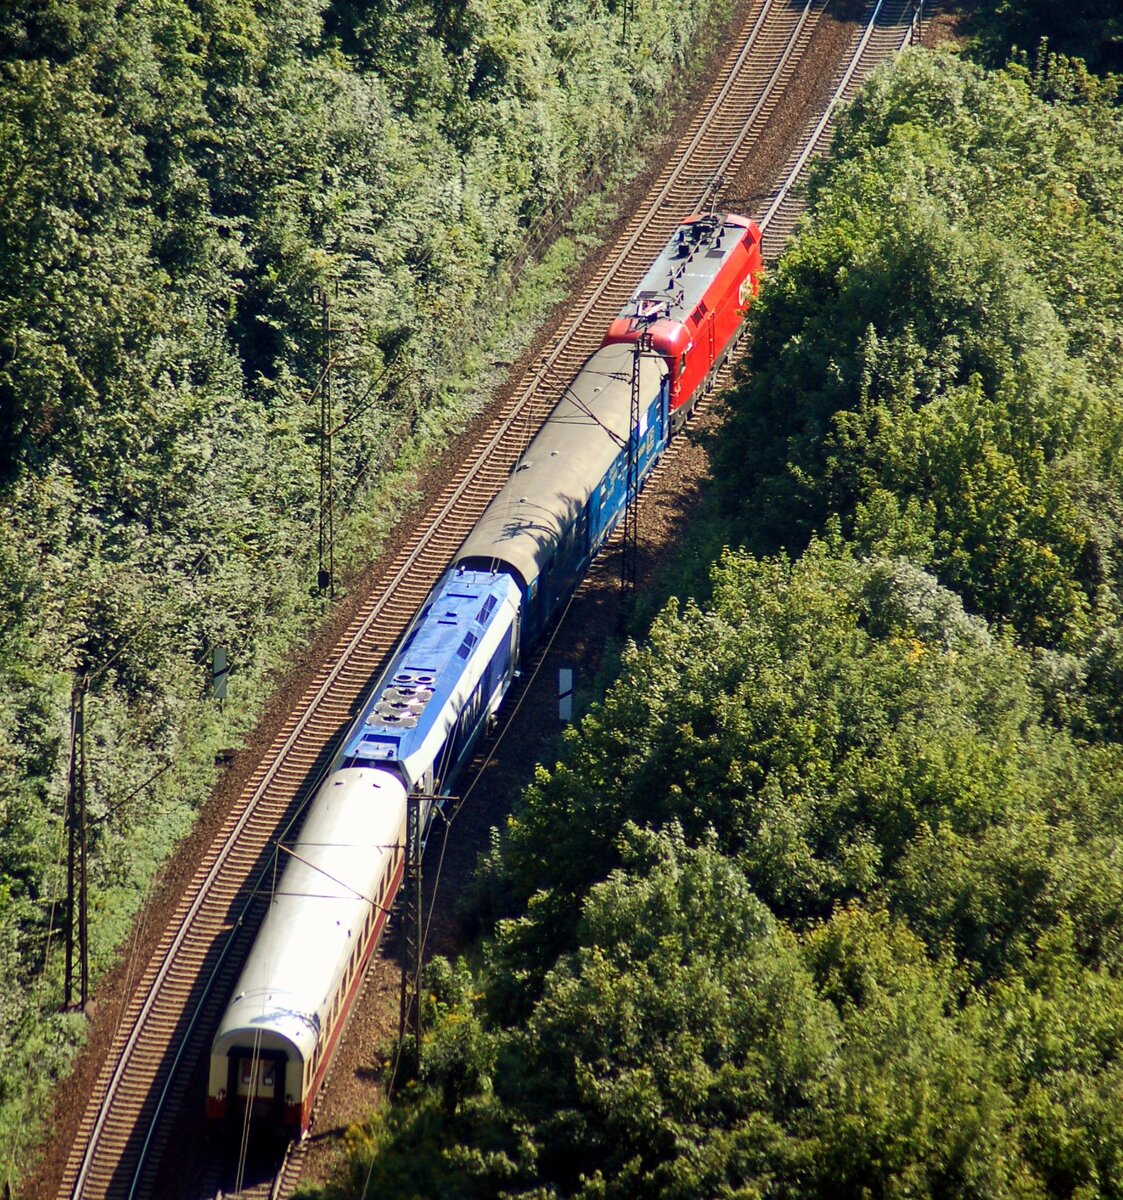 Messzug bestehend aus ÖBB 1116 231-0 und Voith 870 C auf der Geislinger Steige am 26.08.2007.